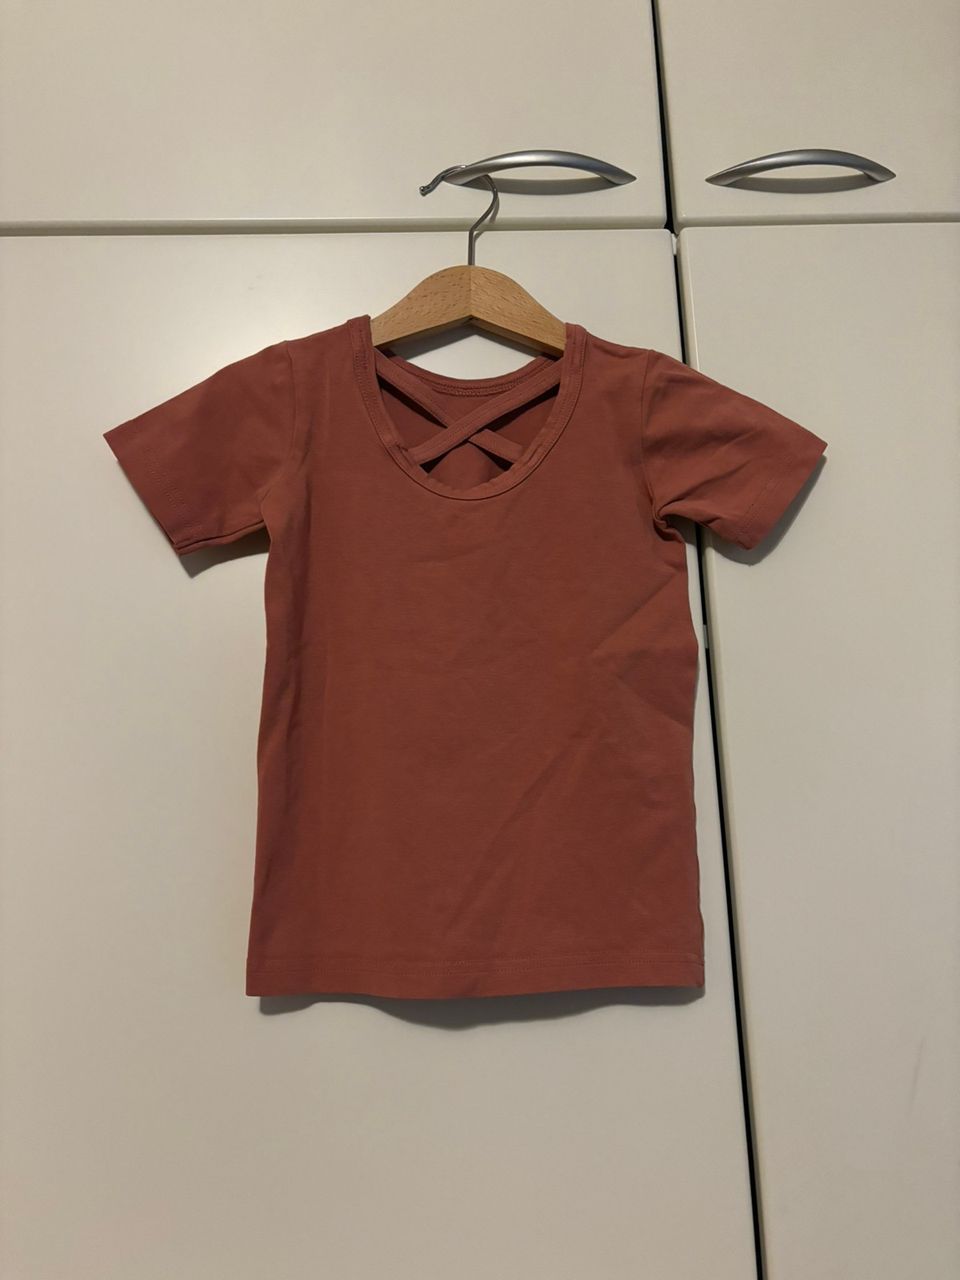 Kaiko cross t-paita 86/92 väri: Peony